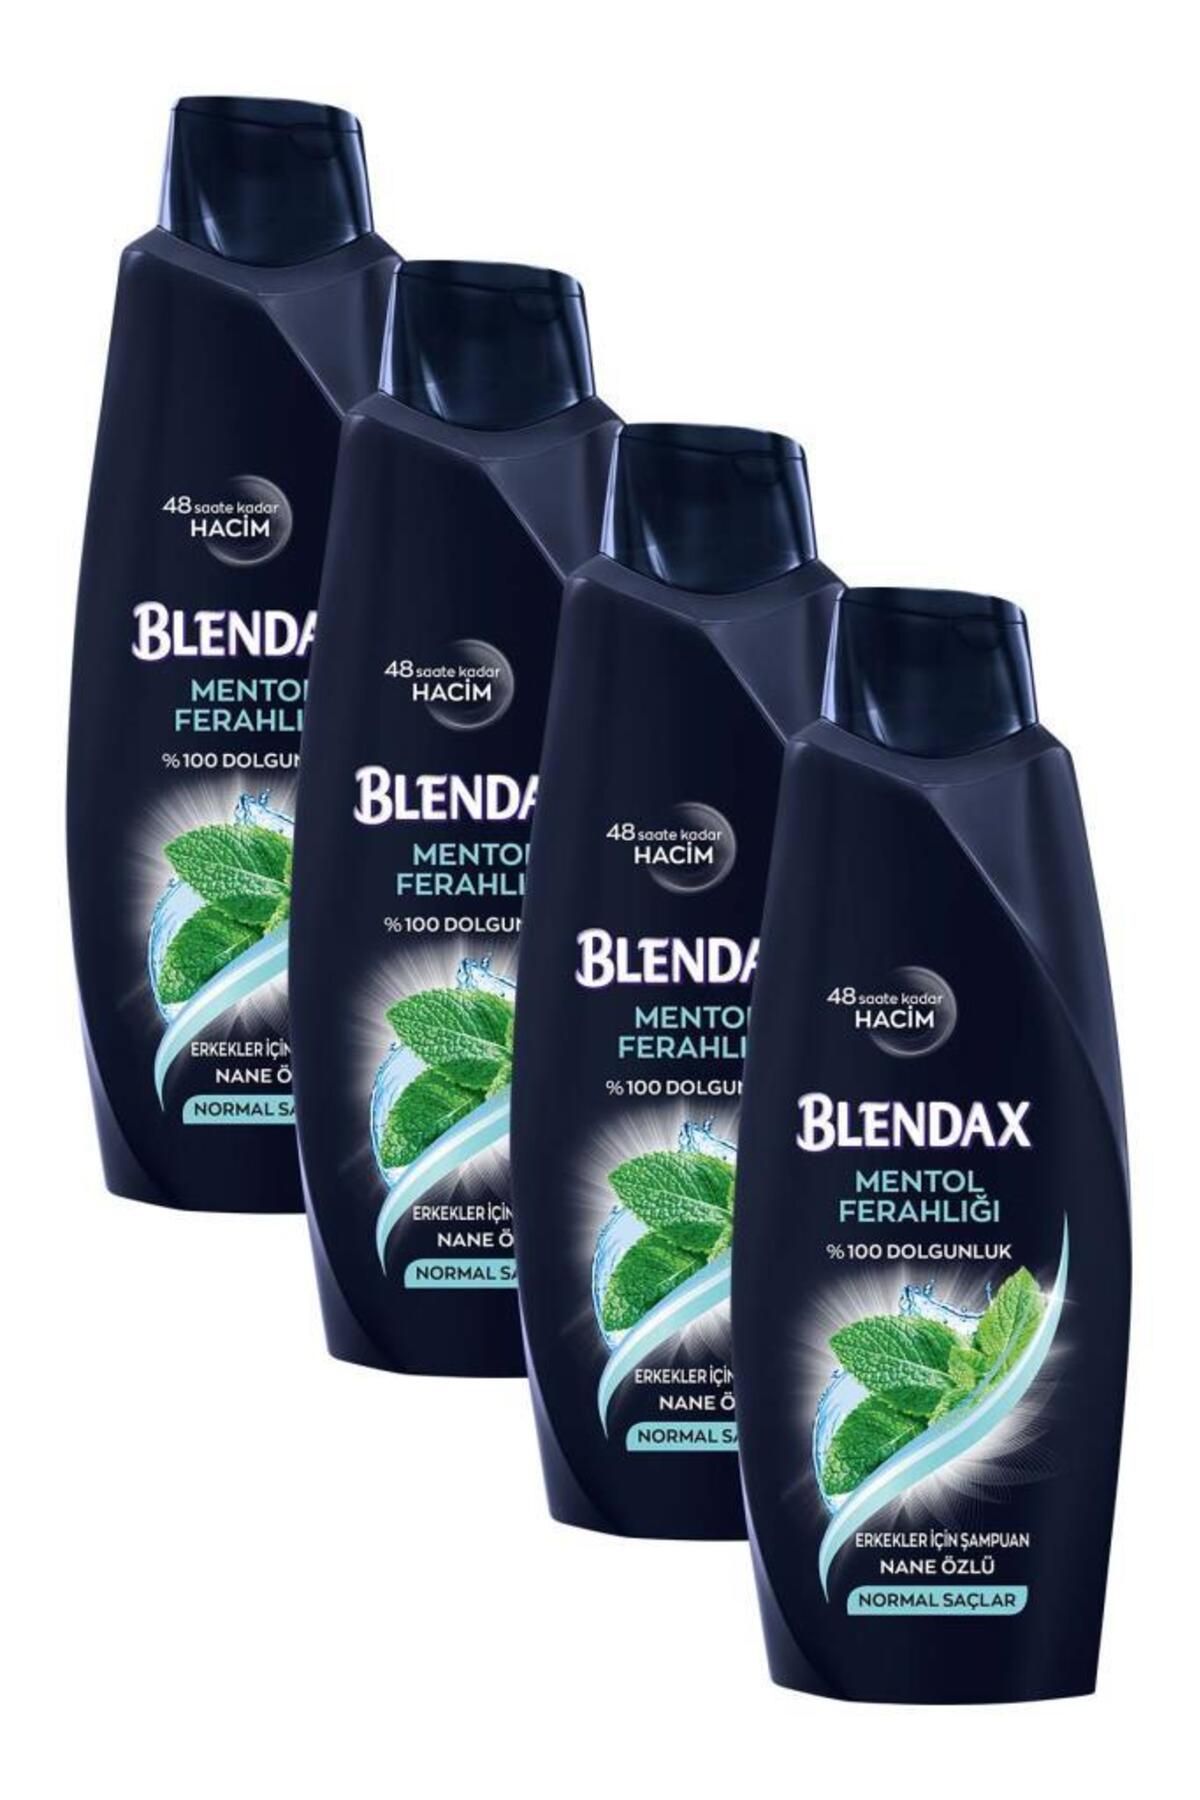 Blendax Erkekler Için Mentollü Şampuan 500 ml X 4 Adet